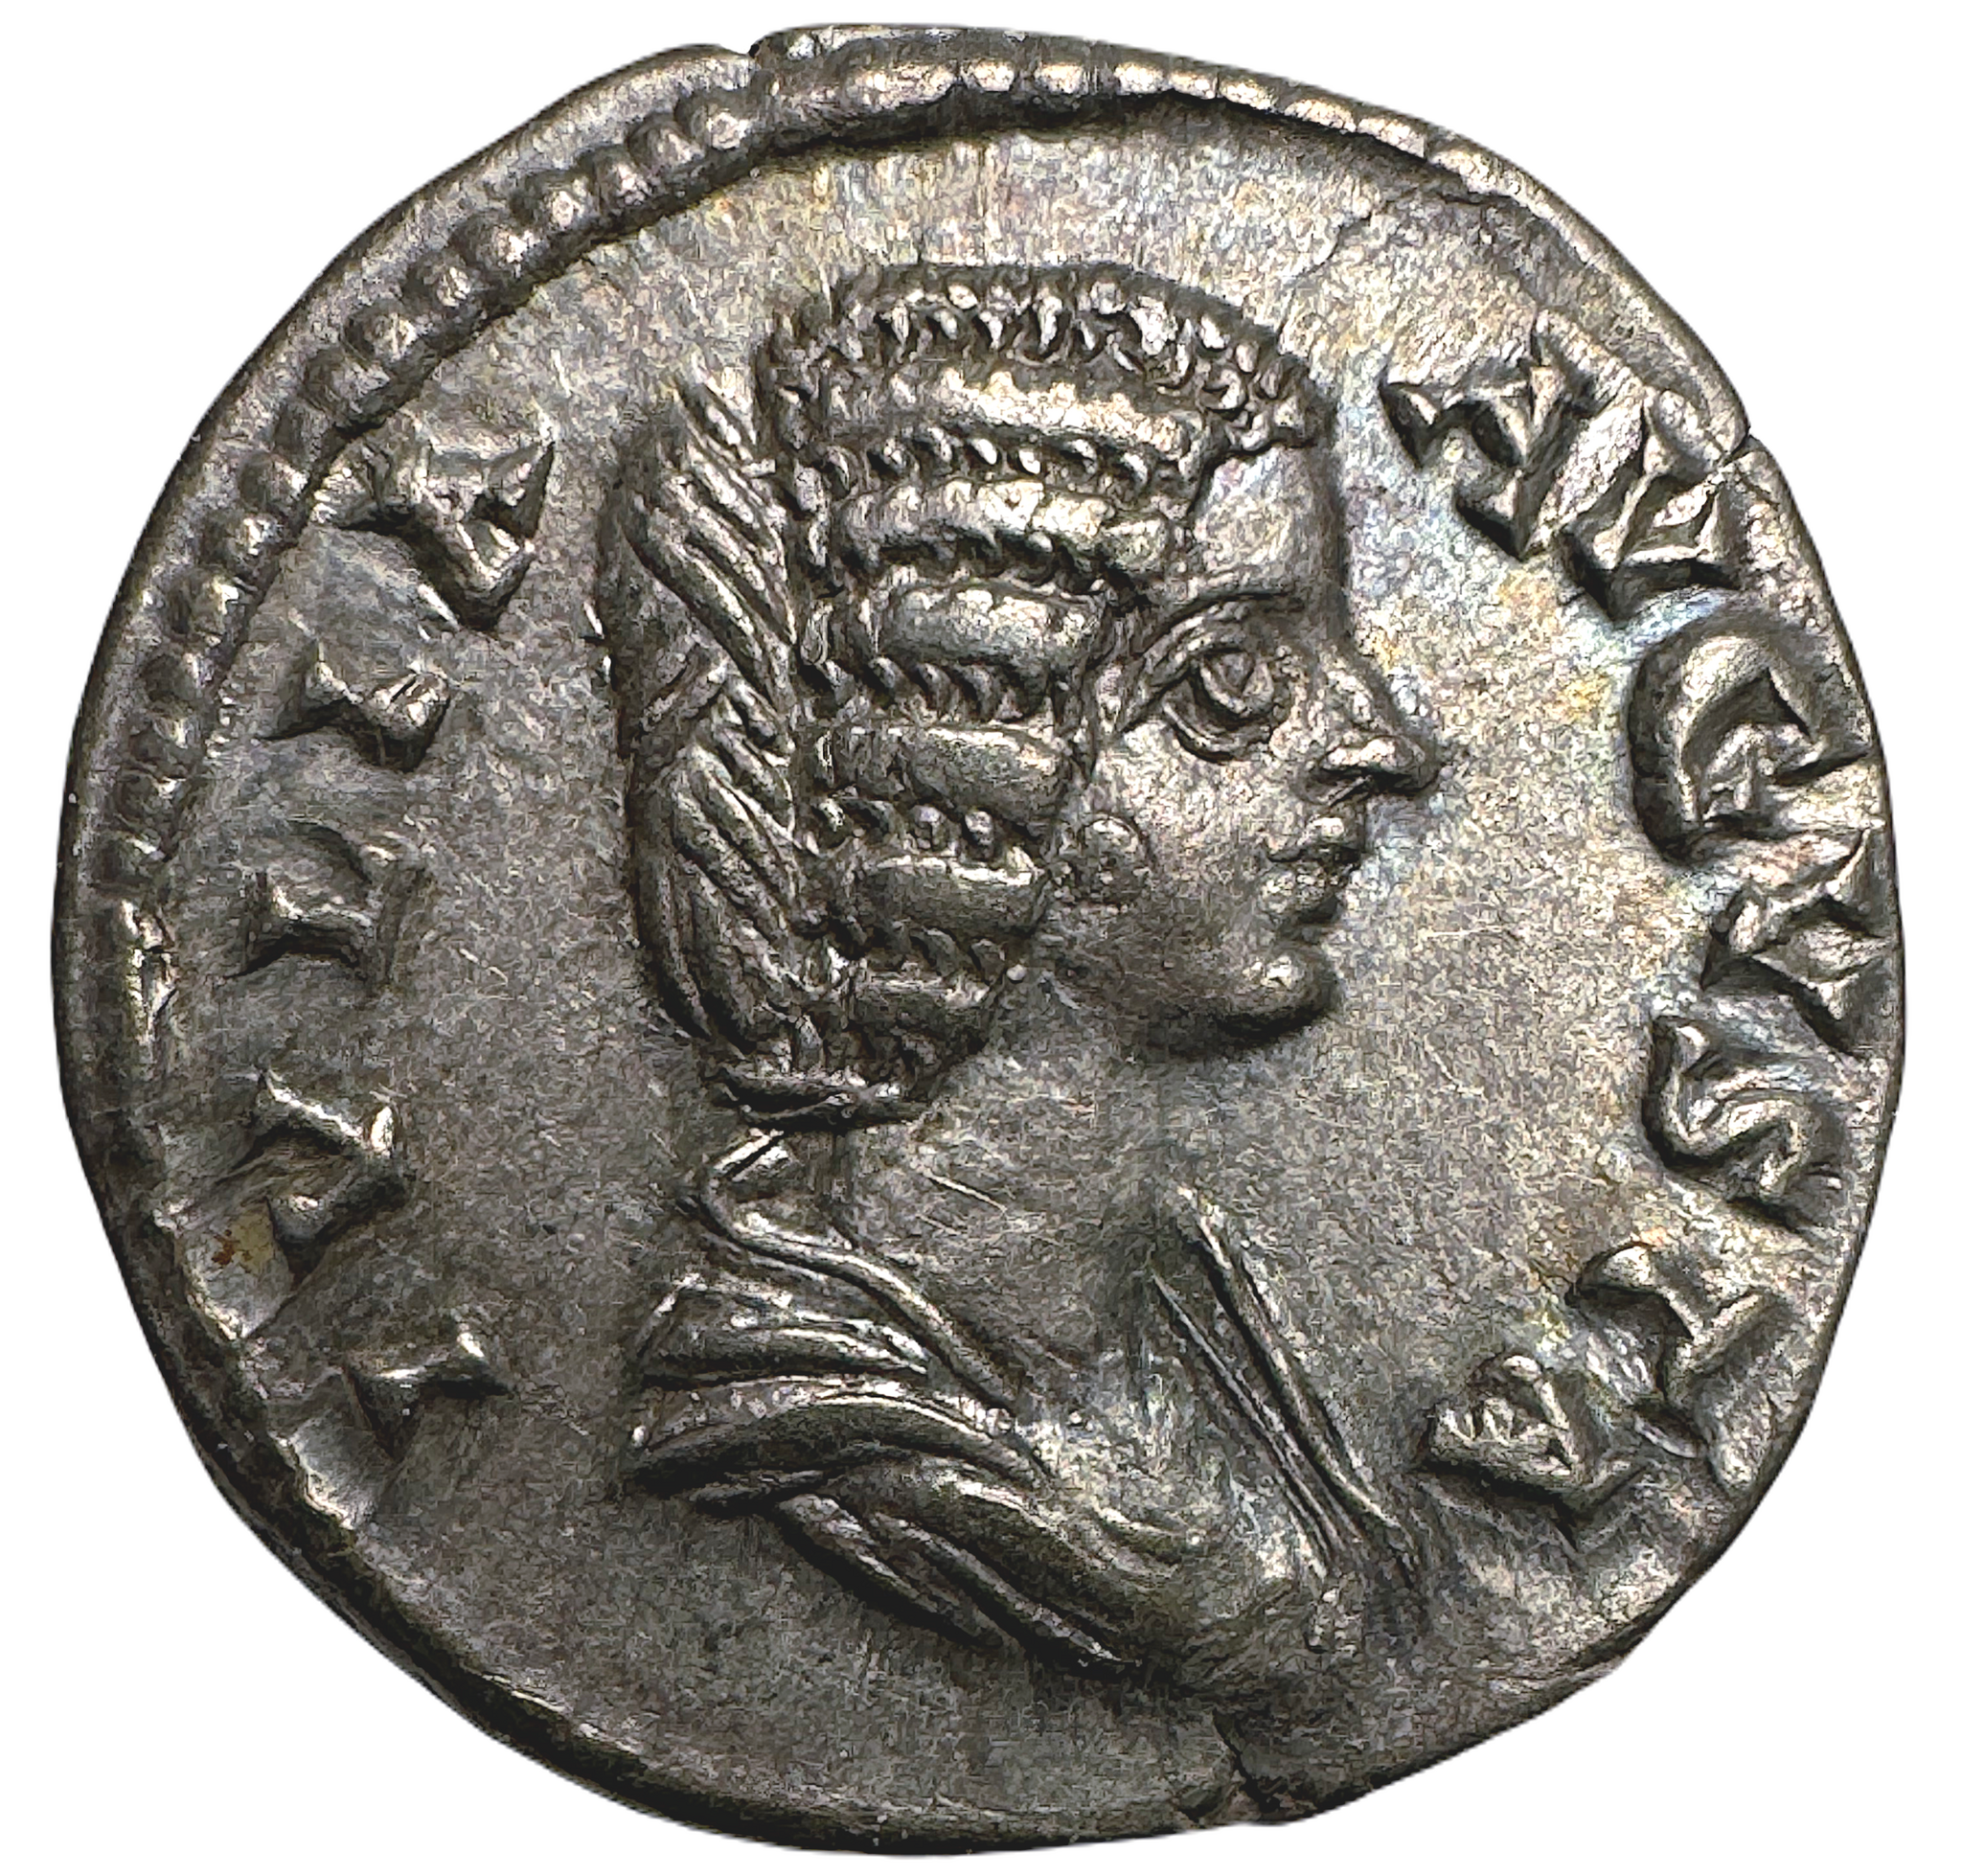 Julia Domna (gift med Septimius Severus 193-211 e.Kr) - Vackert exemplar med blåskimrande patina